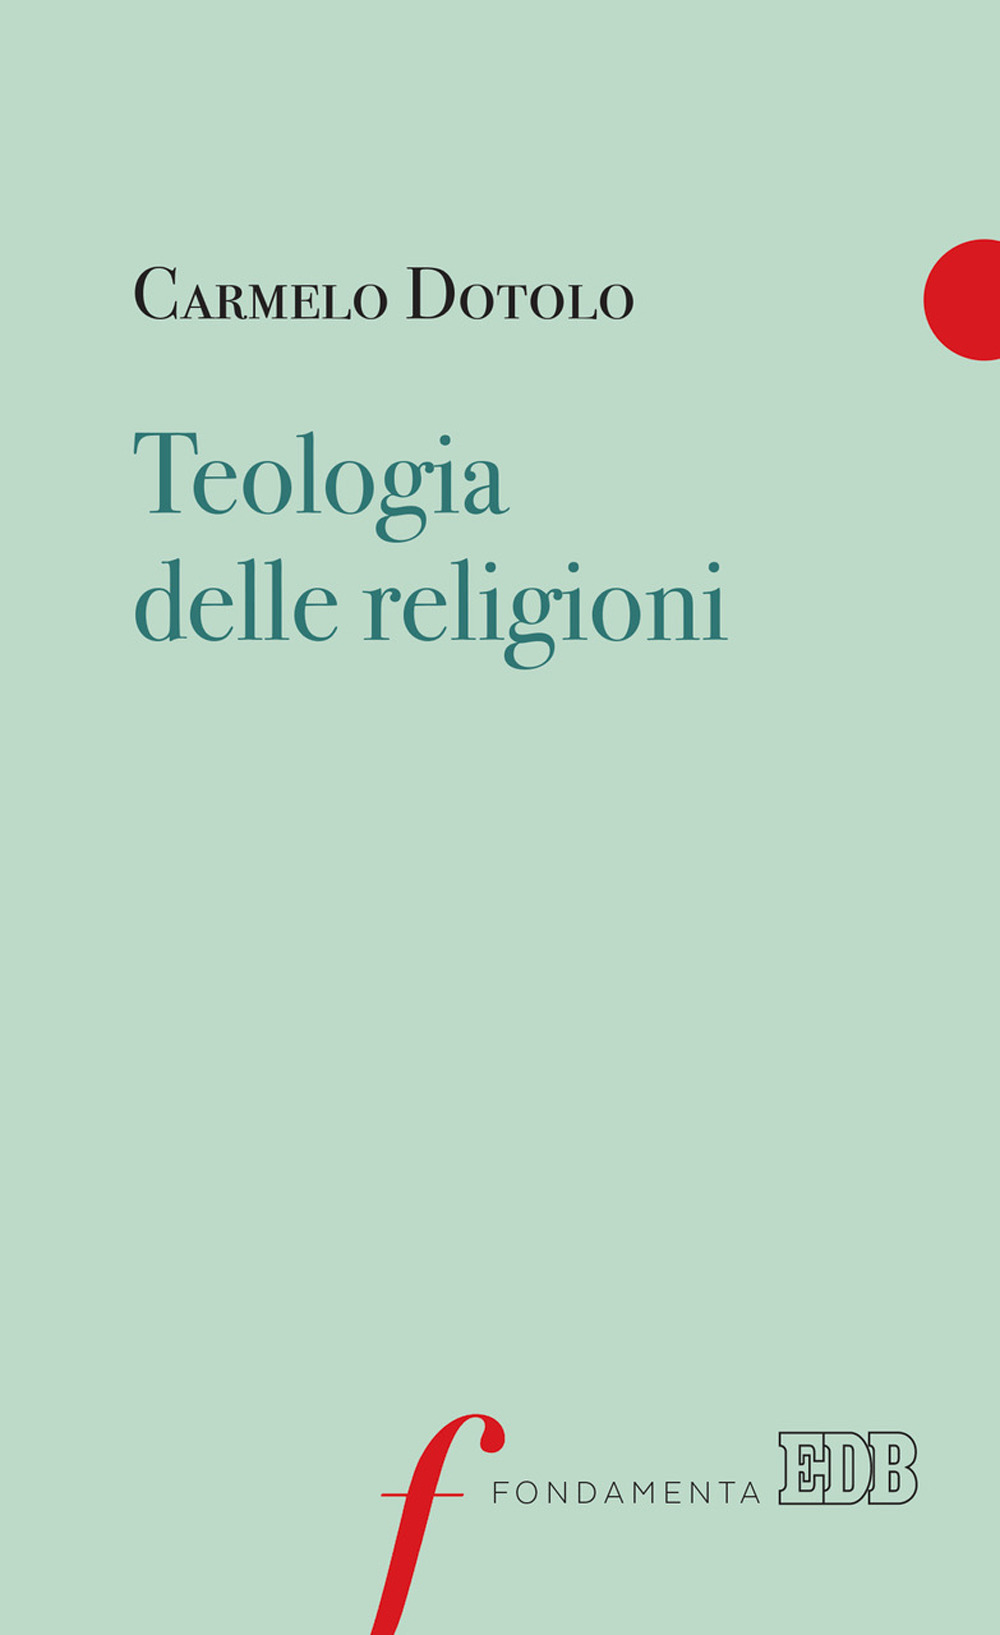 Image of Teologia delle religioni